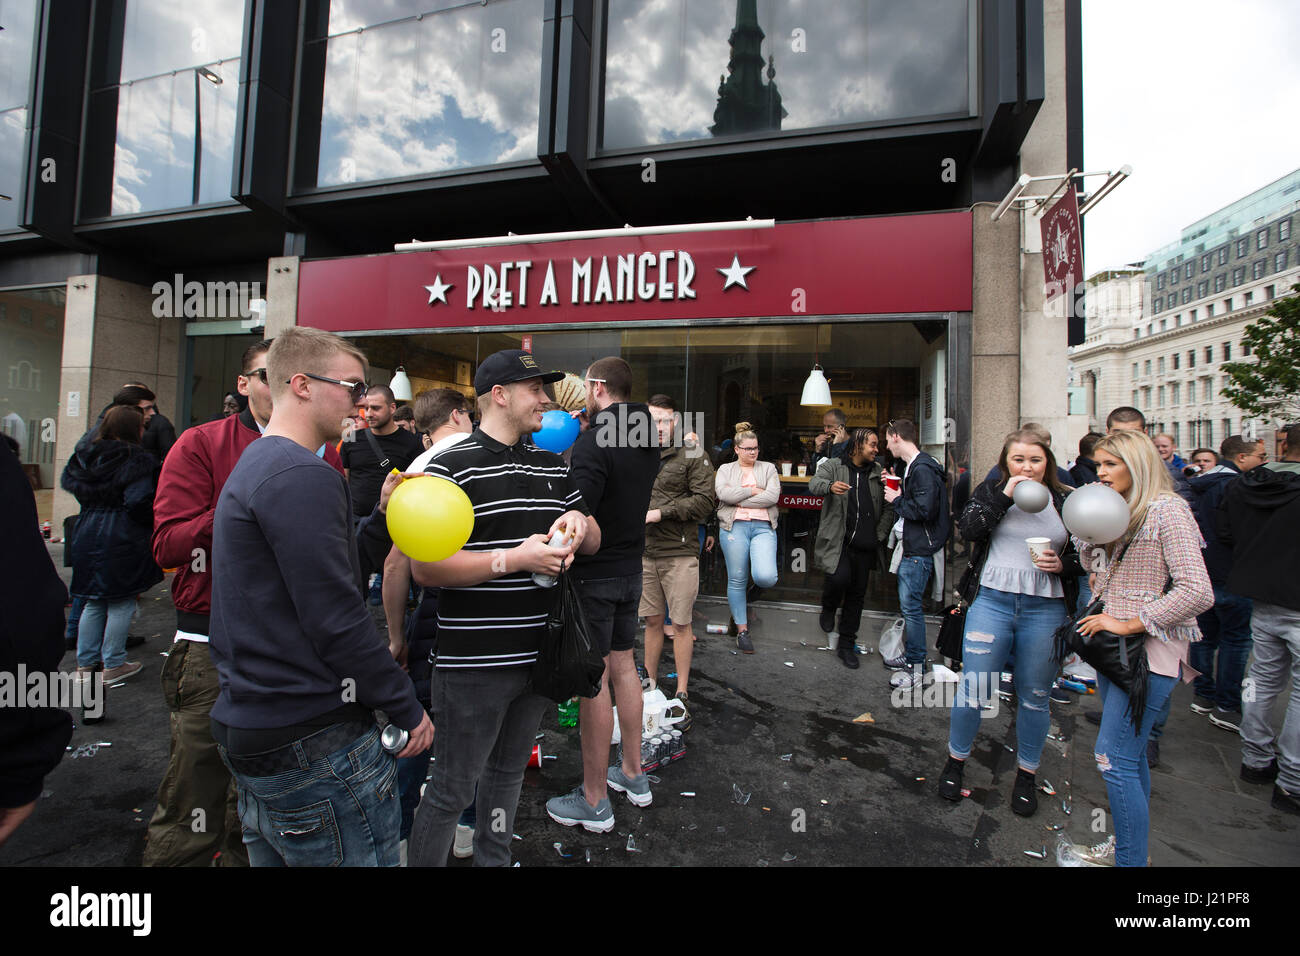 Les jeunes dans les rues de Londres en tenant euphorisants légaux, reniflant de protoxyde d'azote inhalé en ballons, Tower Bridge, London, UK Banque D'Images